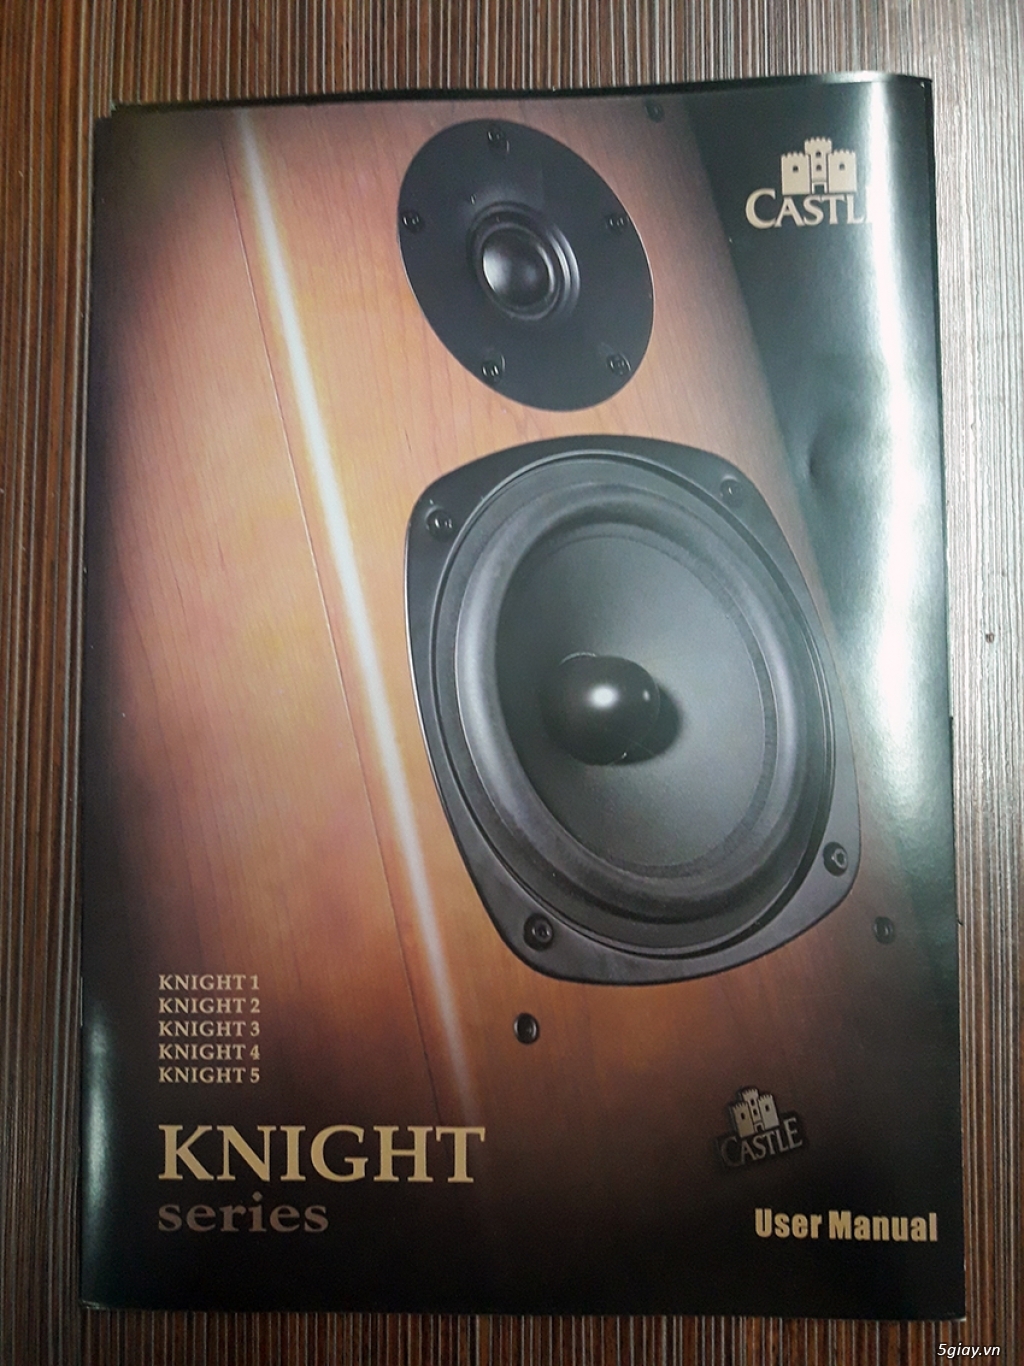 Castle knight 5 - mua chưa được 1 tháng - 5